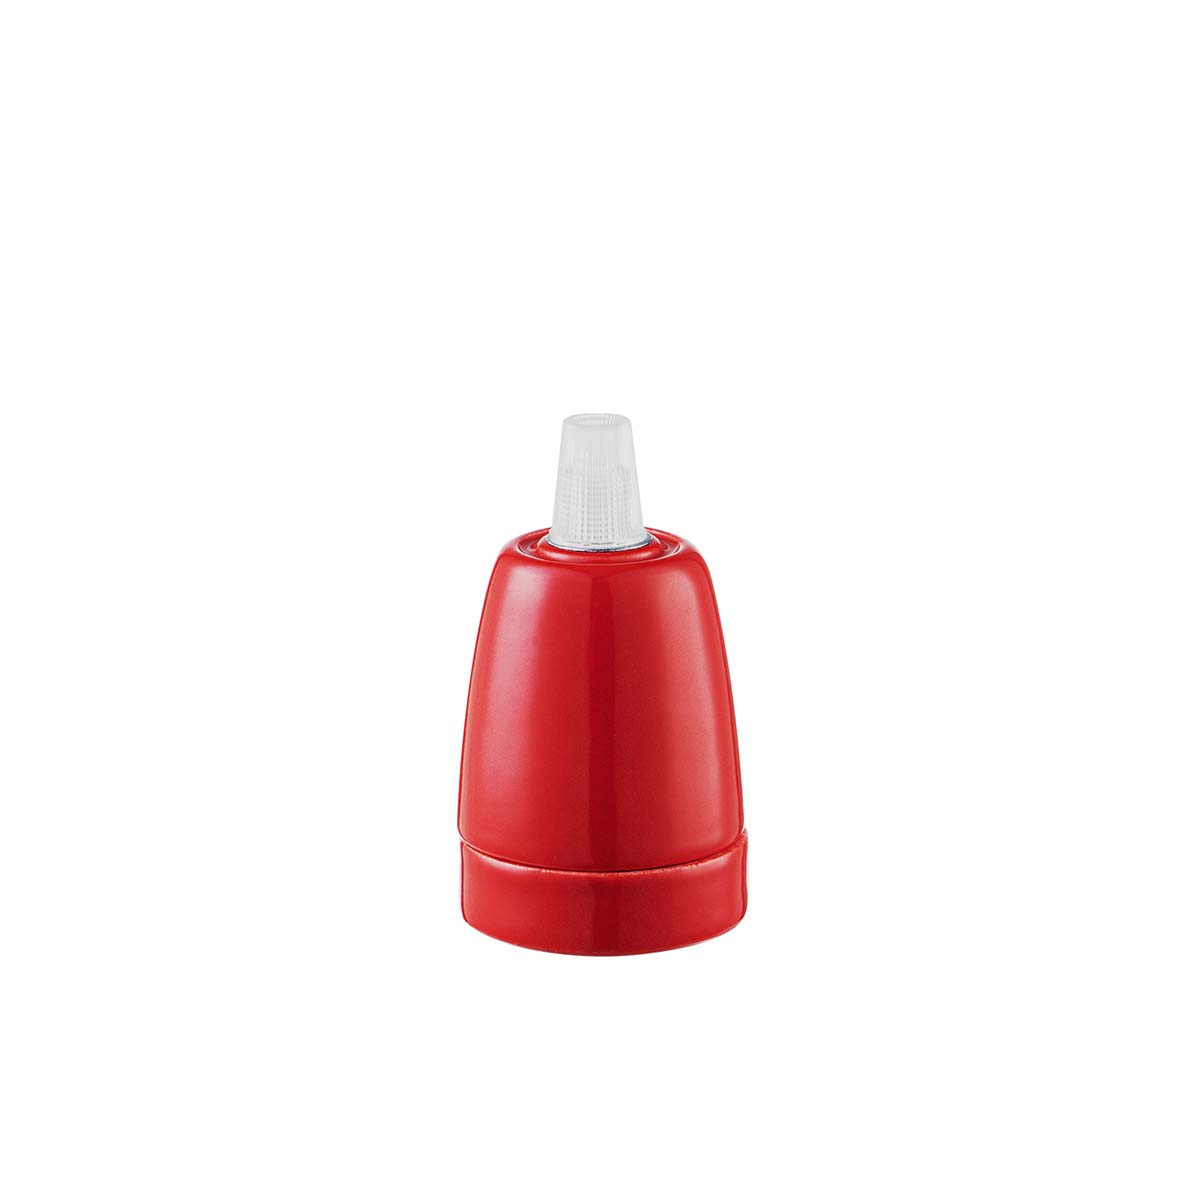 Tangla lighting - TLLH025RD - lamp holder porcelain - E27 - pot - red